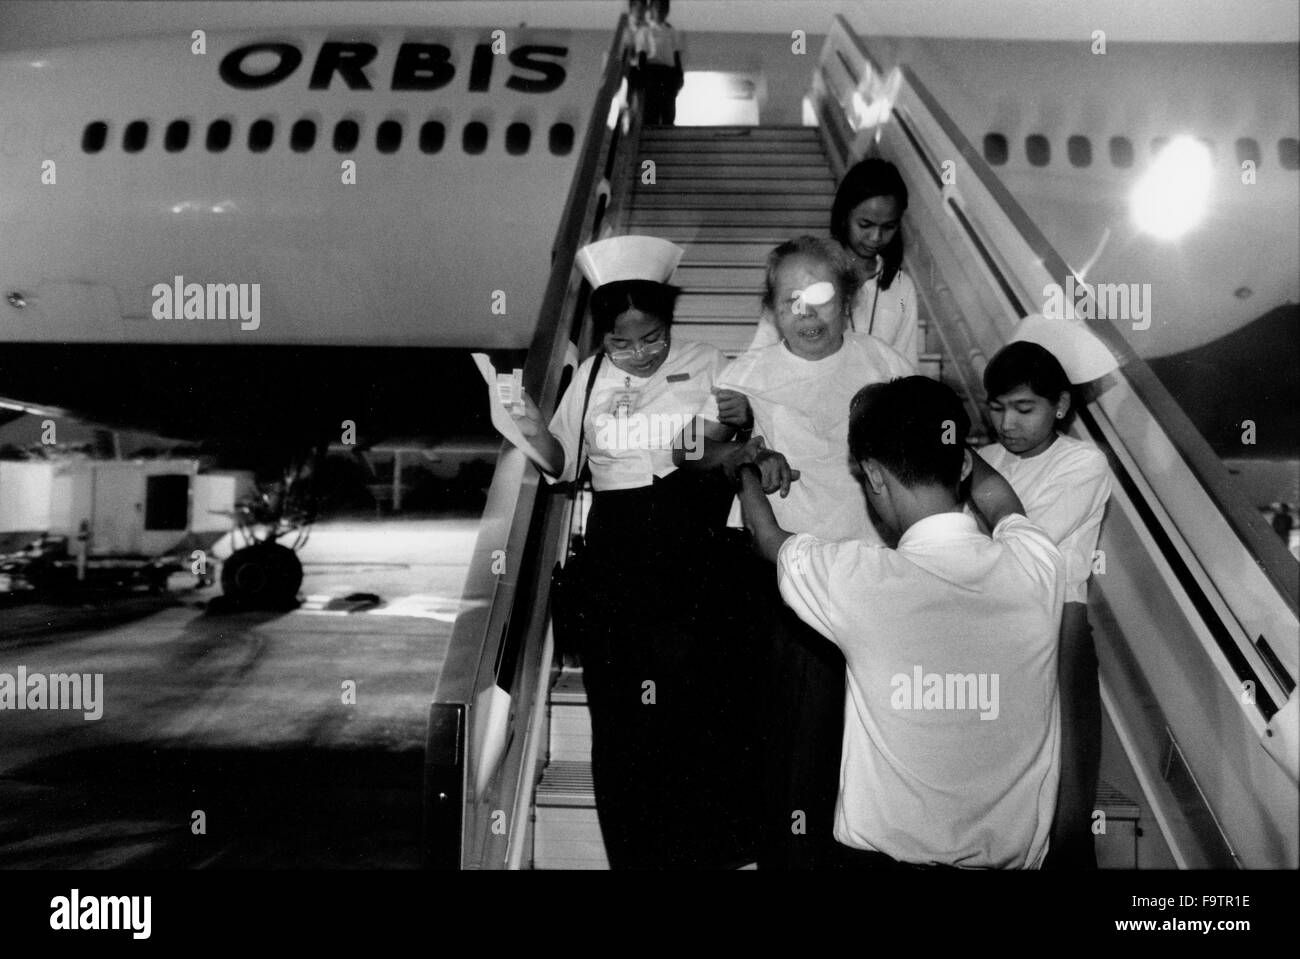 Orbis fliegende Augenklinik auf eine DC10 auf der Start-und Landebahn am Flughafen von Yangon, Myanmar. Patienten aus dem Flugzeug von Krankenschwestern nach erfolgreicher Operation geholfen. Stockfoto